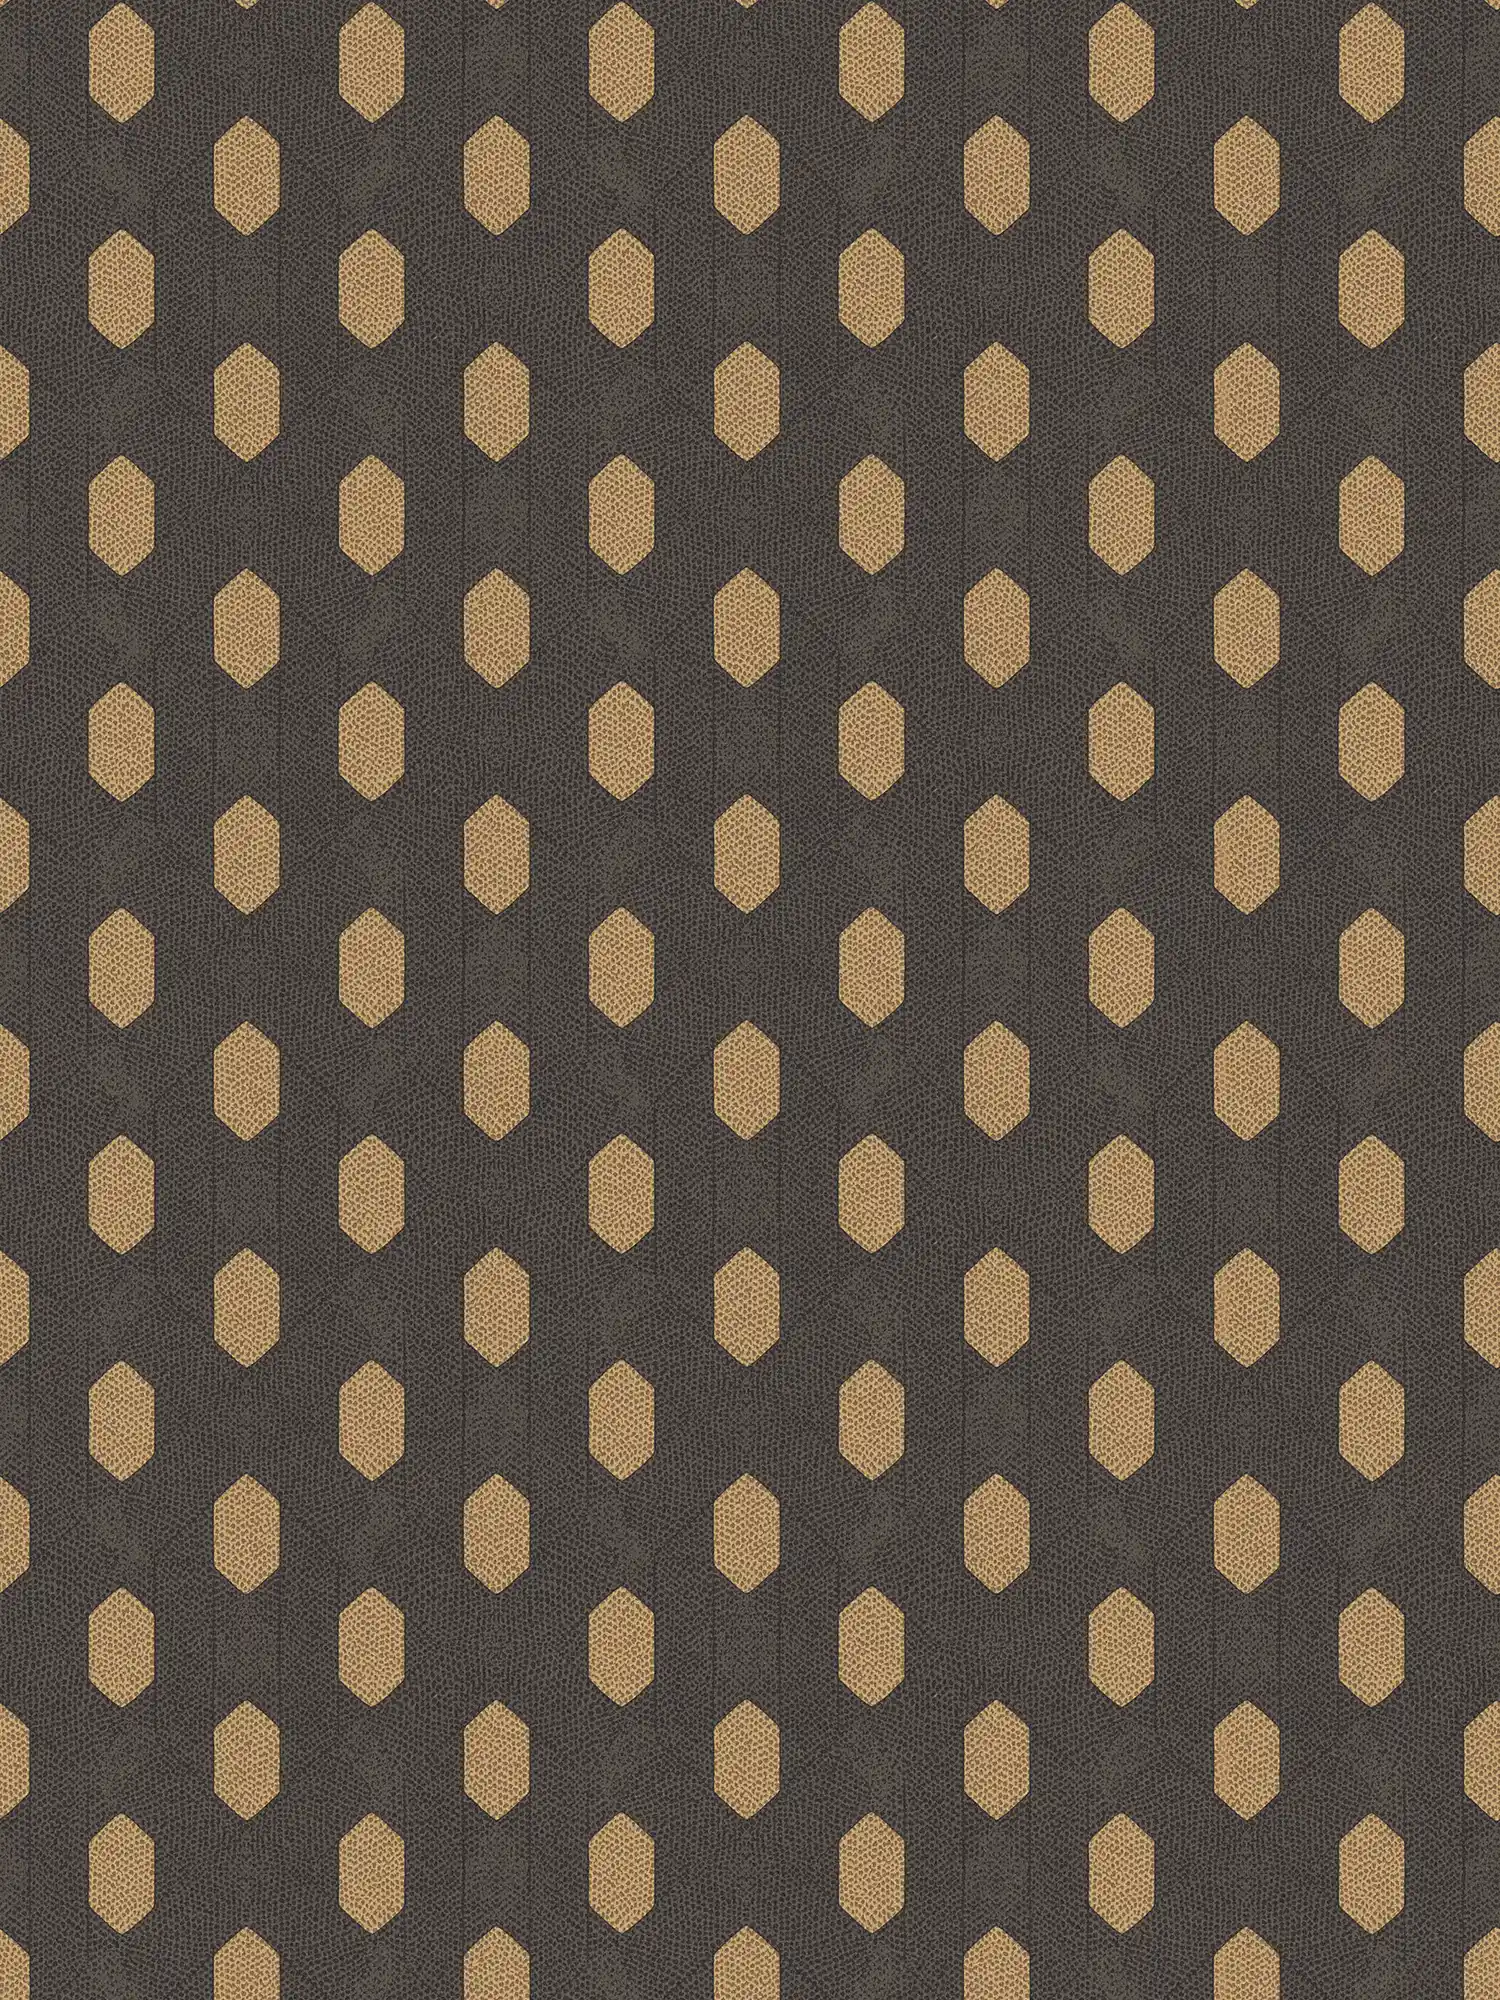 Elégant papier peint uni avec motif doré - noir, or, marron
